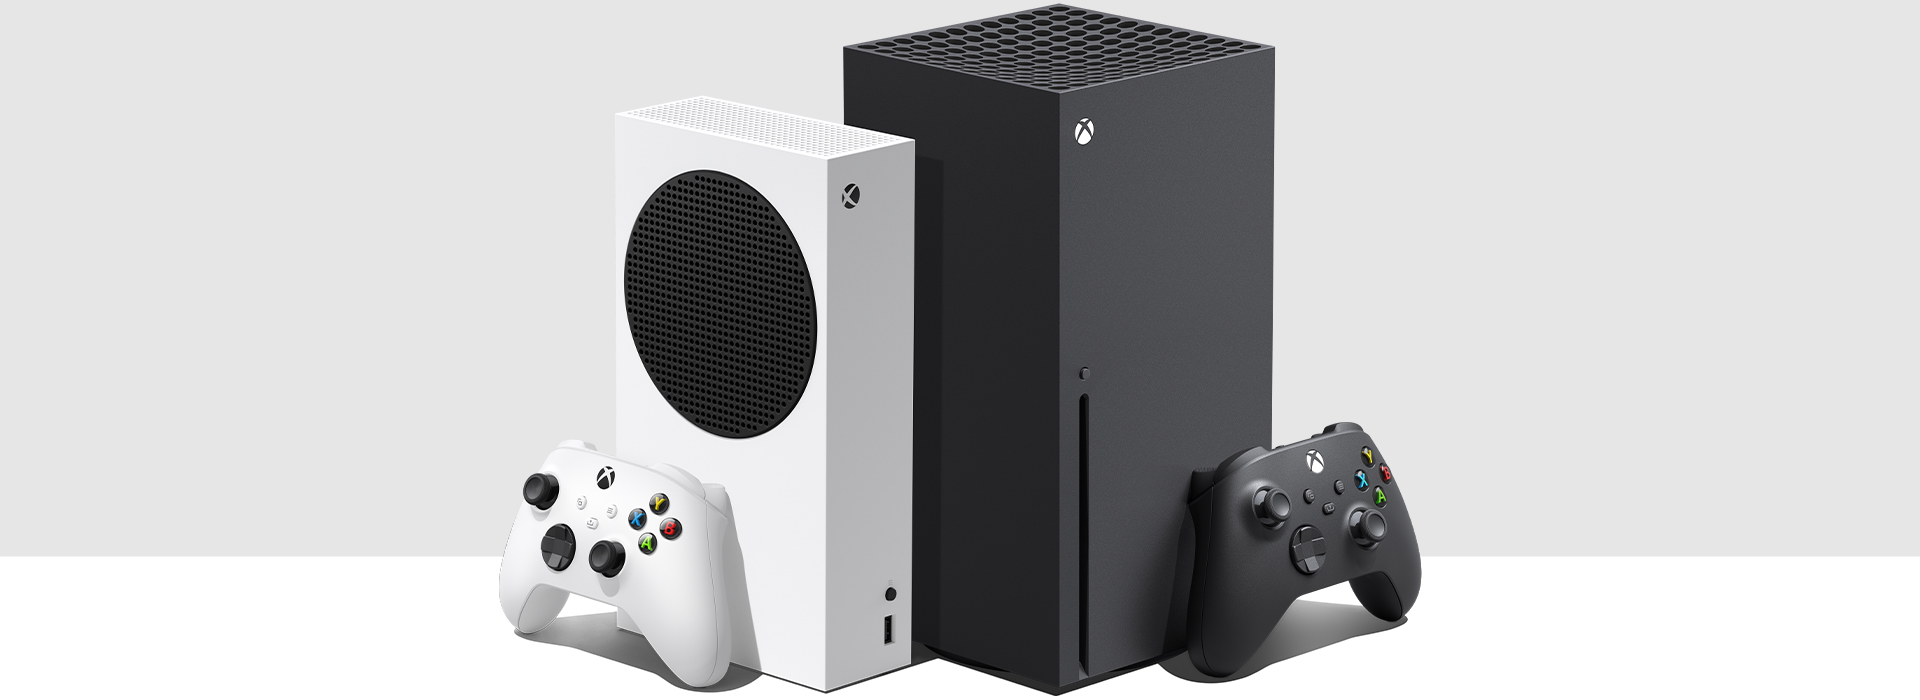 Xbox Series S 和 Xbox Series X 主機並排。